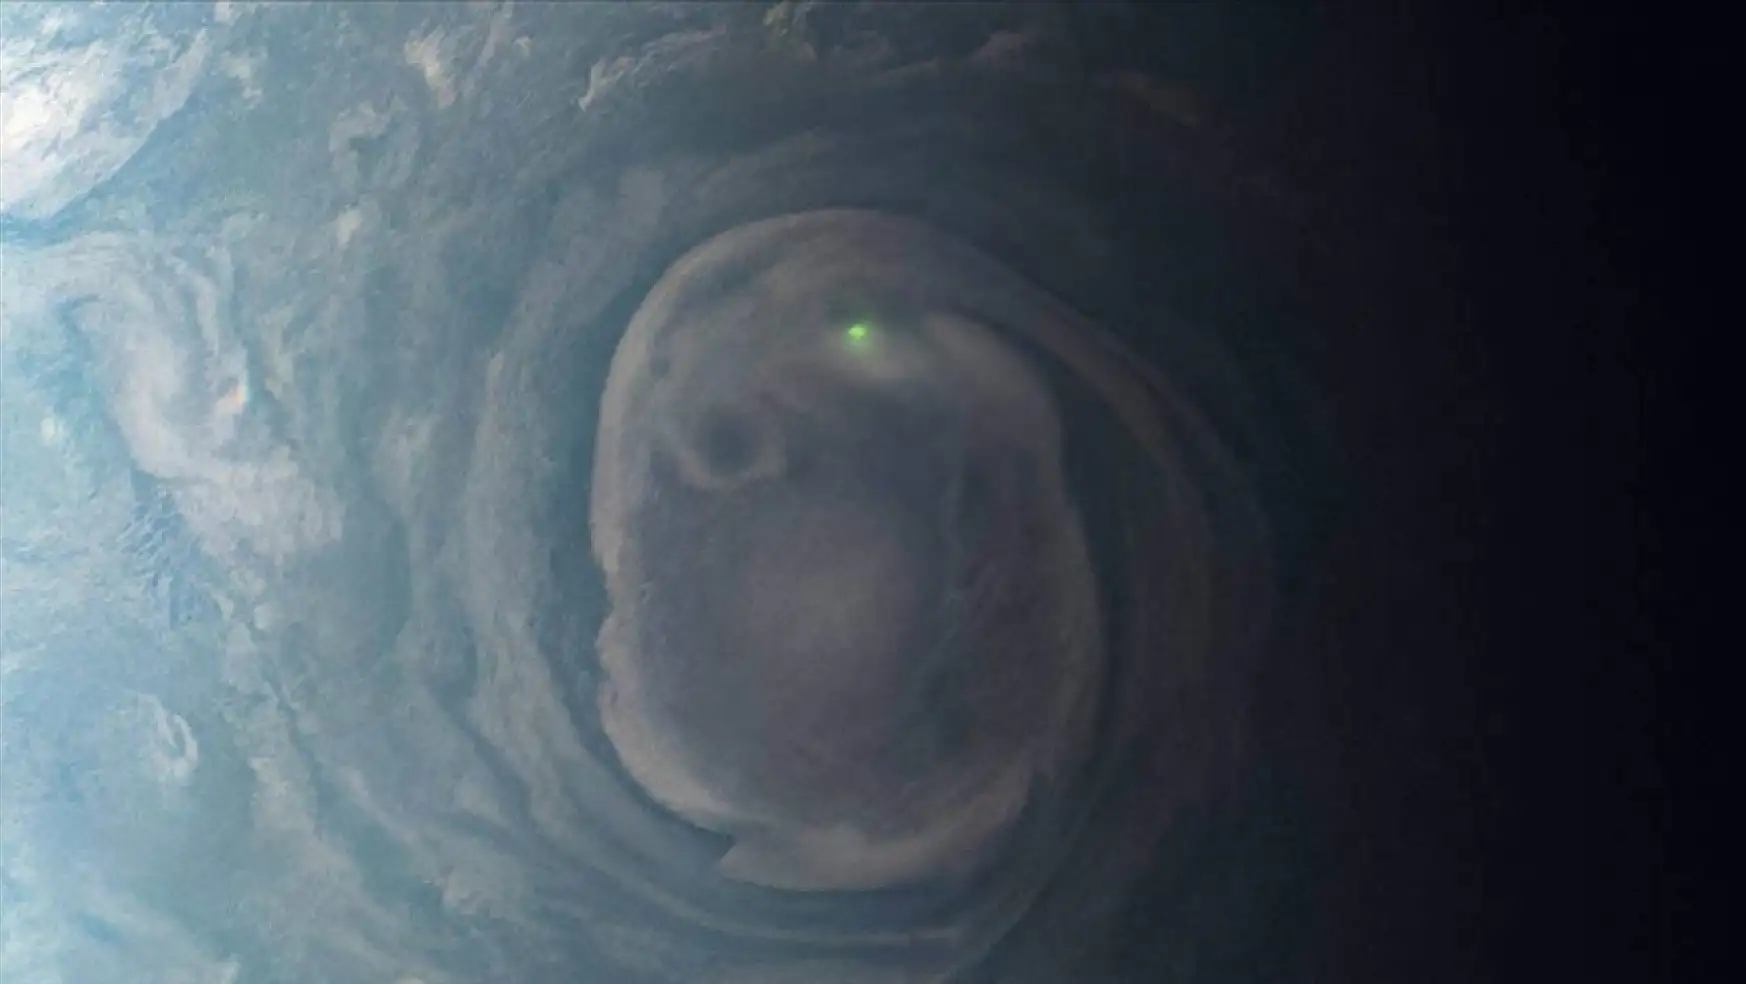 NASA'nın Juno uzay aracı, Jüpiter'de 'yeşil parlak bir kürenin' fotoğrafını çekti